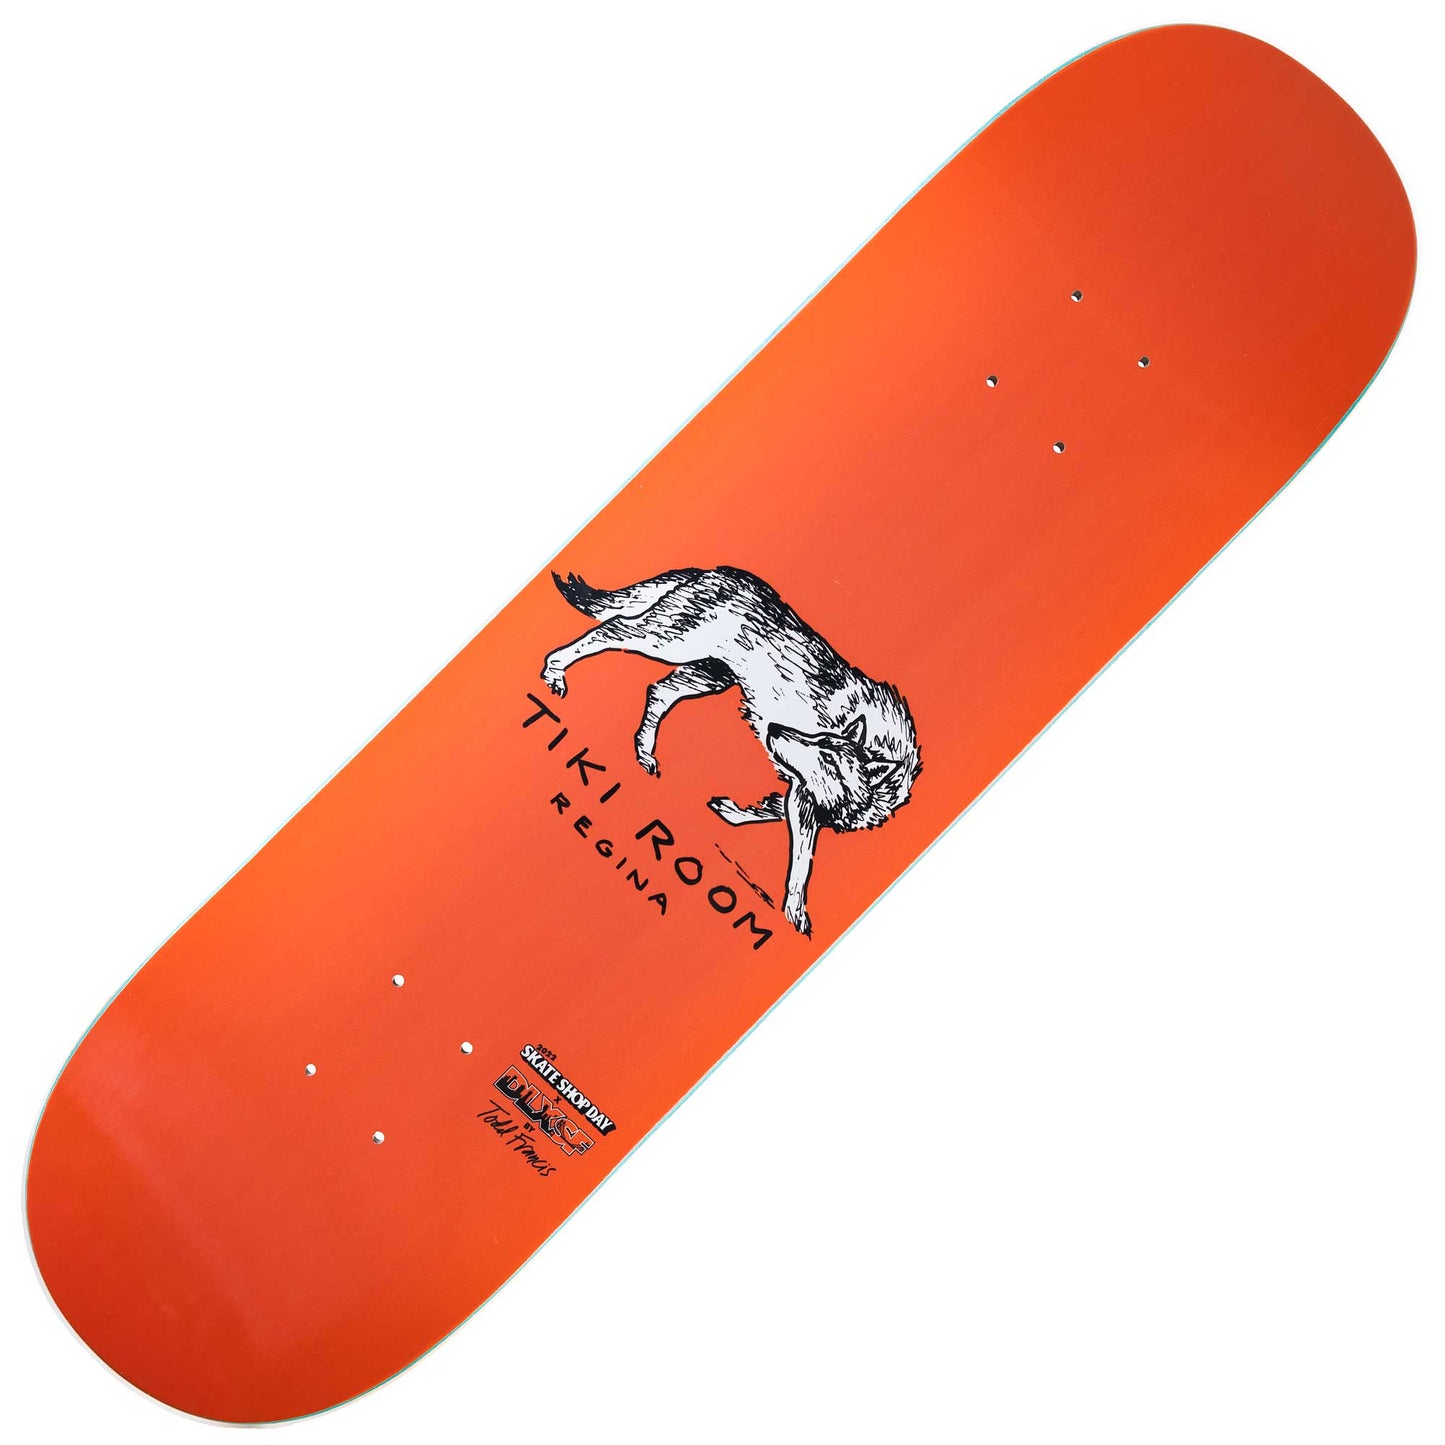 Tiki Room DLX Sketchy Wolf Deck (8.5”) - Tiki Room Skateboards - 1